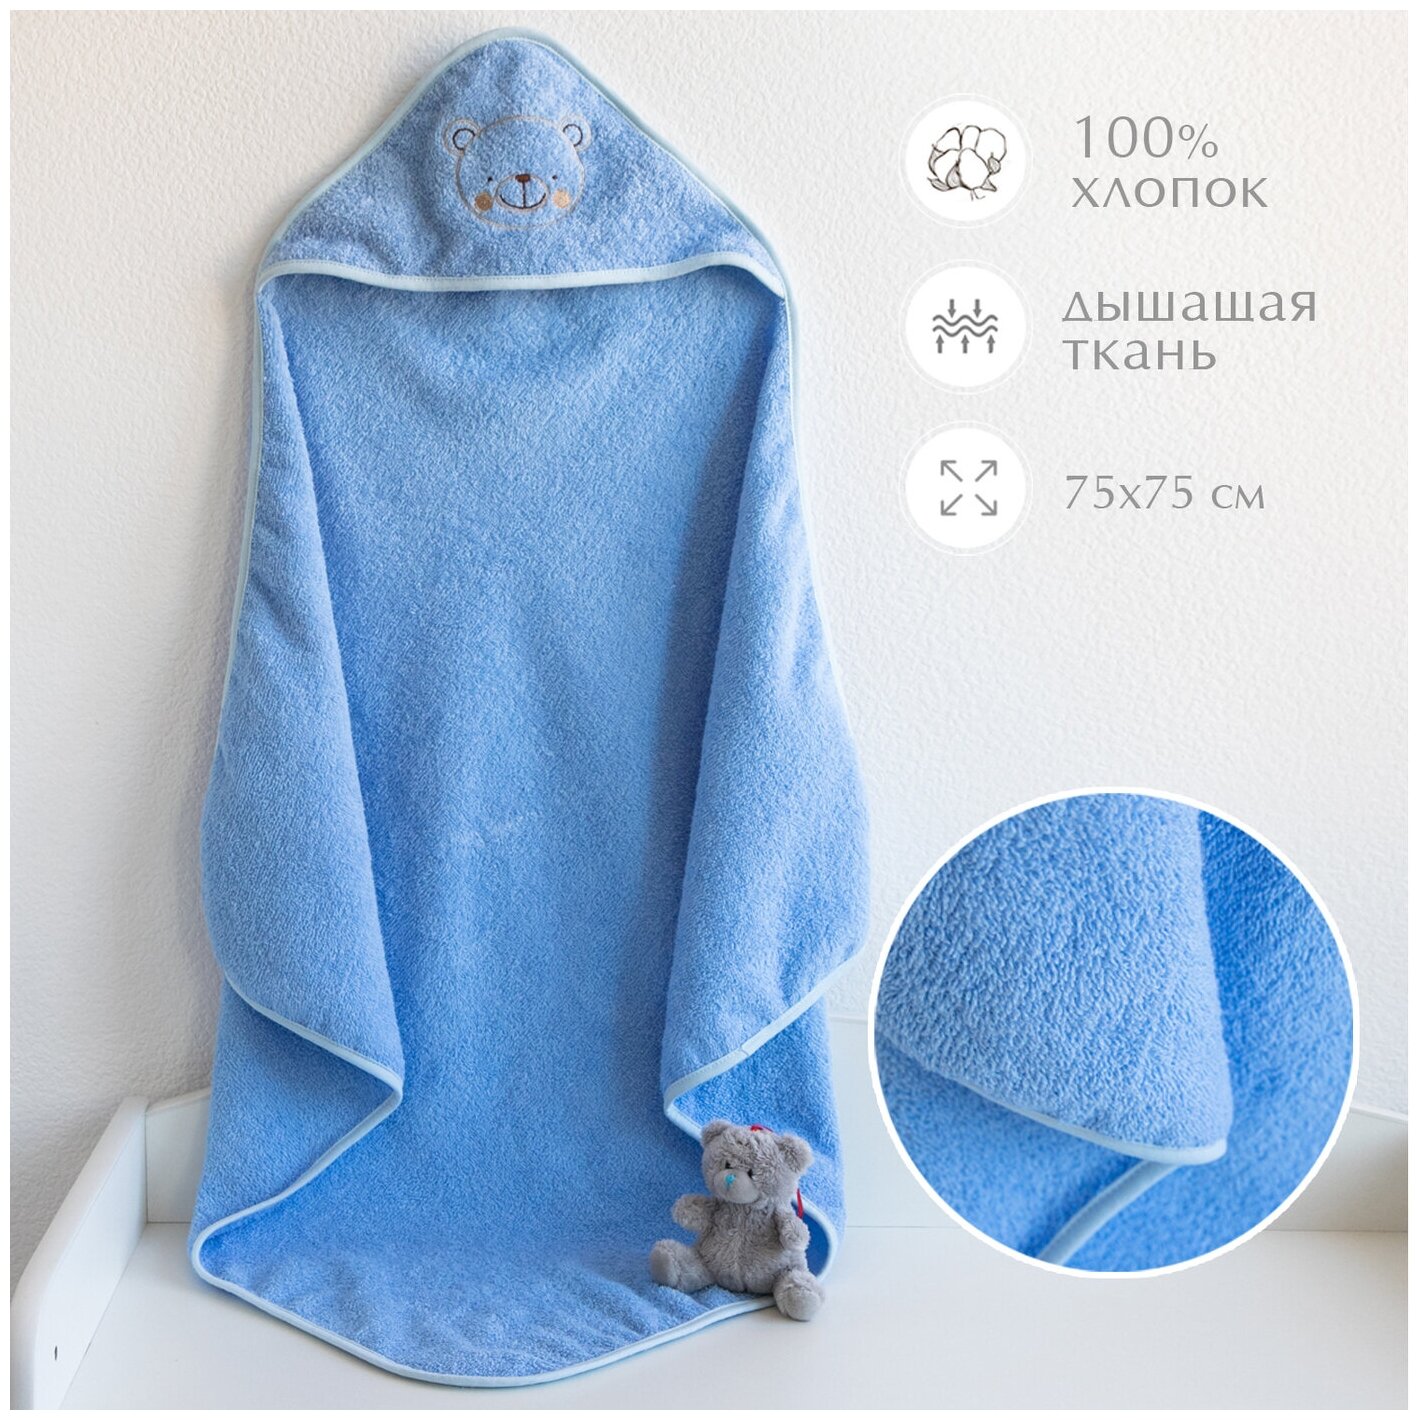 Полотенце для новорожденного с капюшоном детское махровое 75x75 см, полотенце уголок для новорожденного, для бассейна